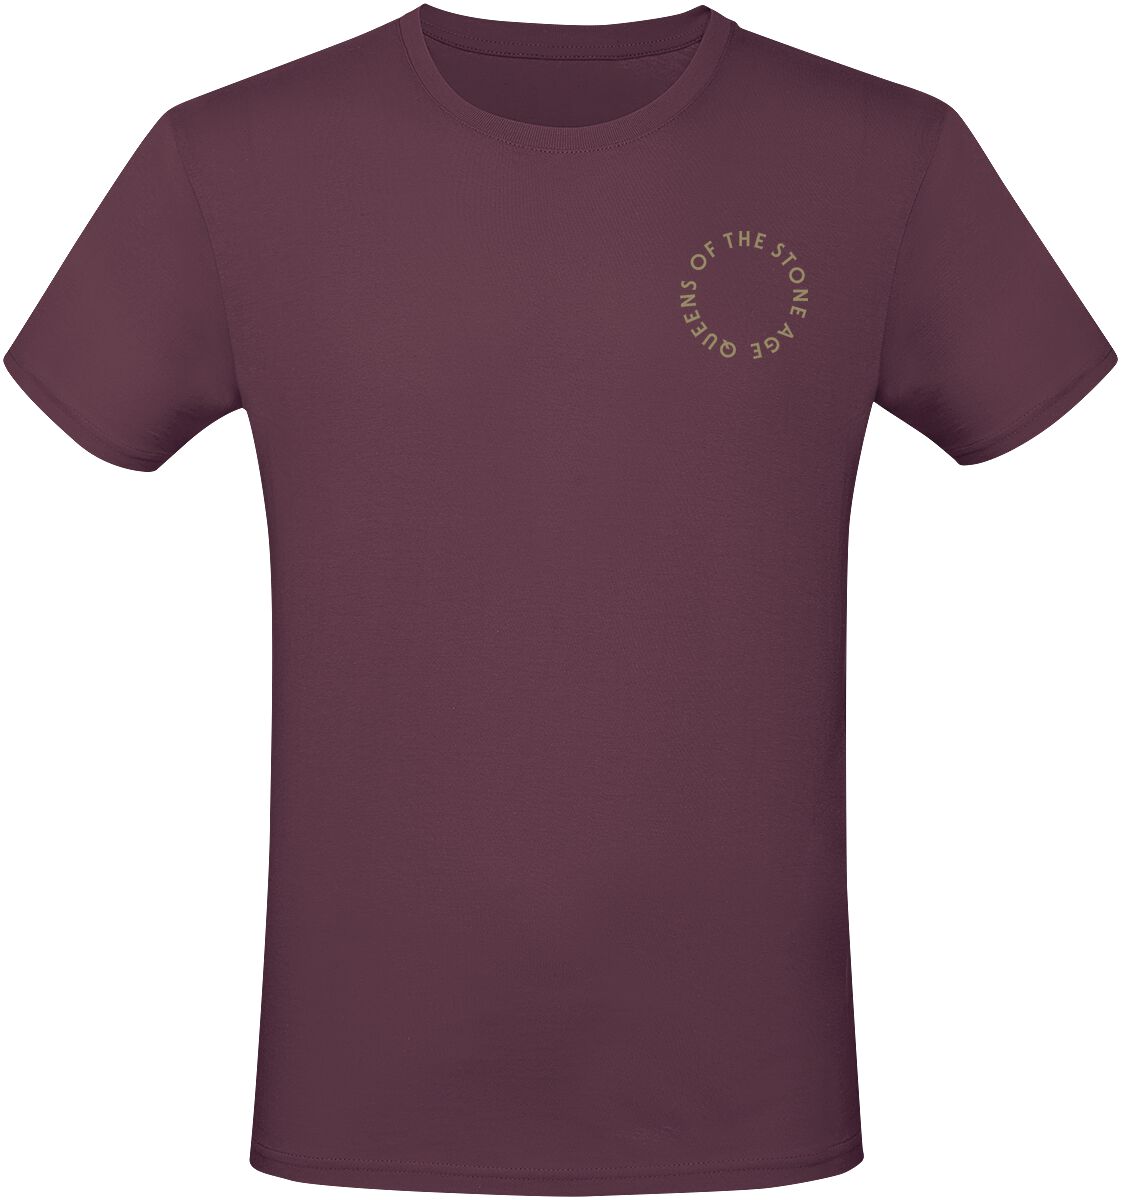 Queens Of The Stone Age T-Shirt - In Times New Roman - Snakes - S bis 3XL - für Männer - Größe S - burgund  - Lizenziertes Merchandise!